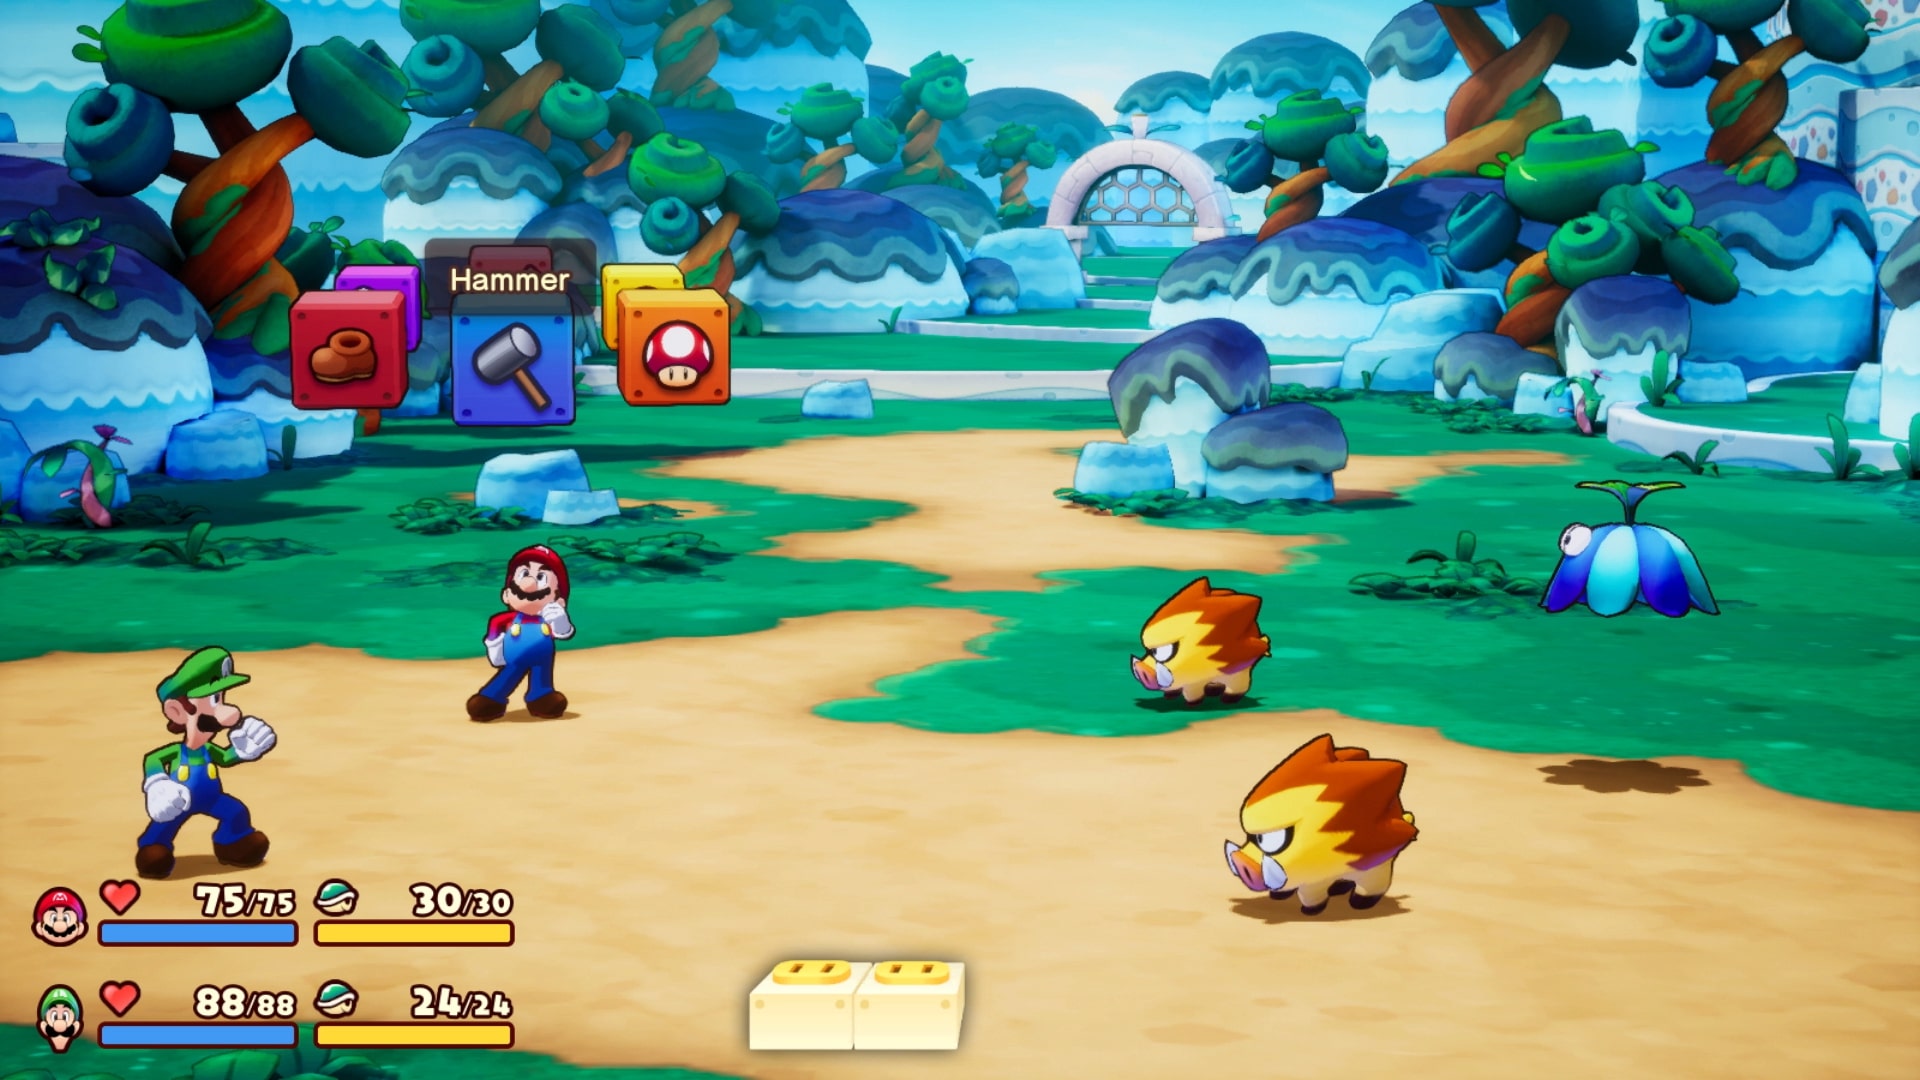 Mario et luigi l epopee fraternelle screenshot 2 1 31